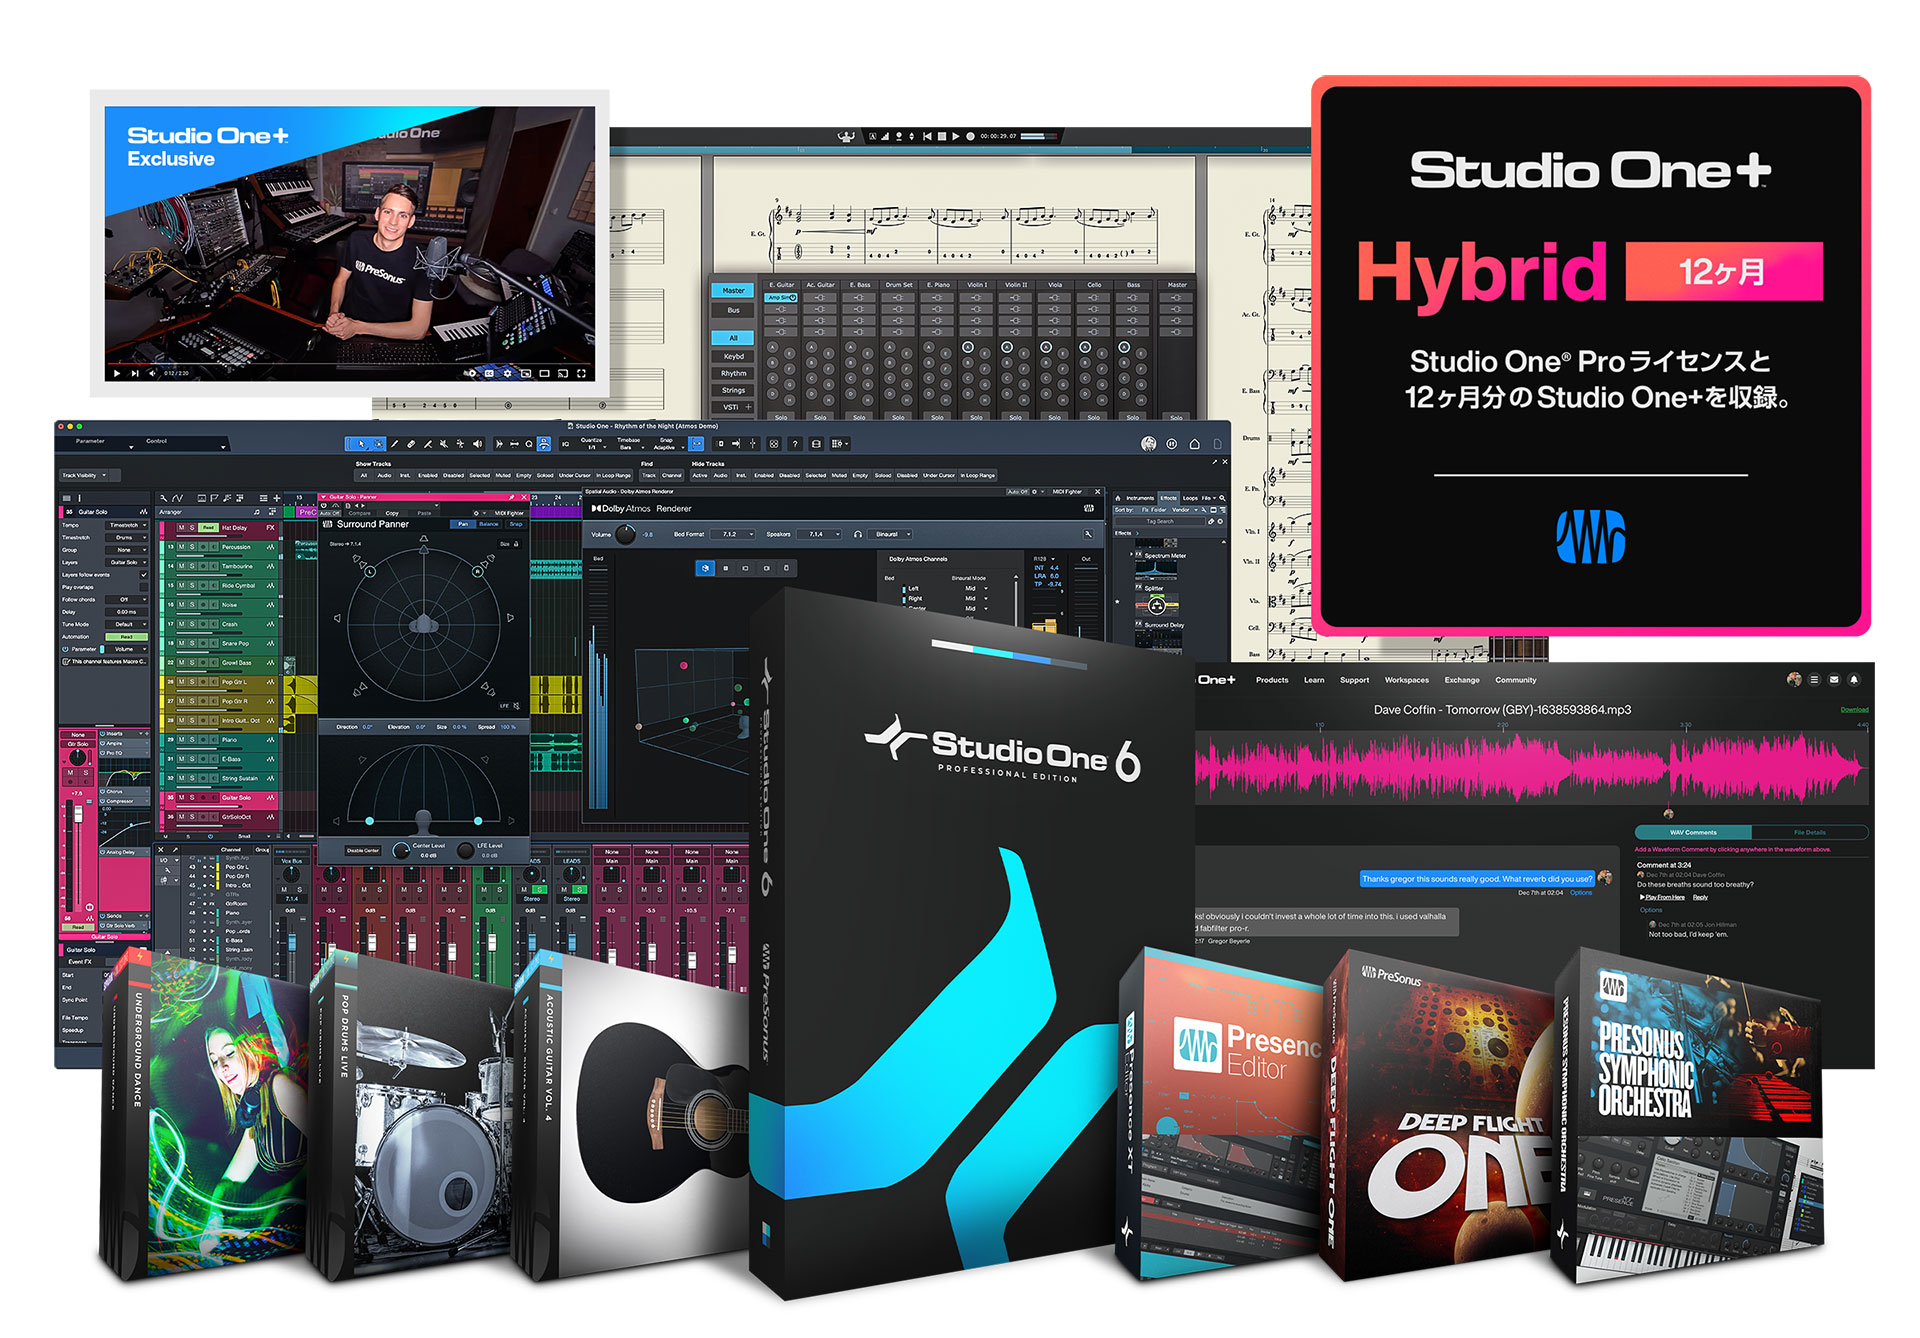 Studio One+ Hybrid